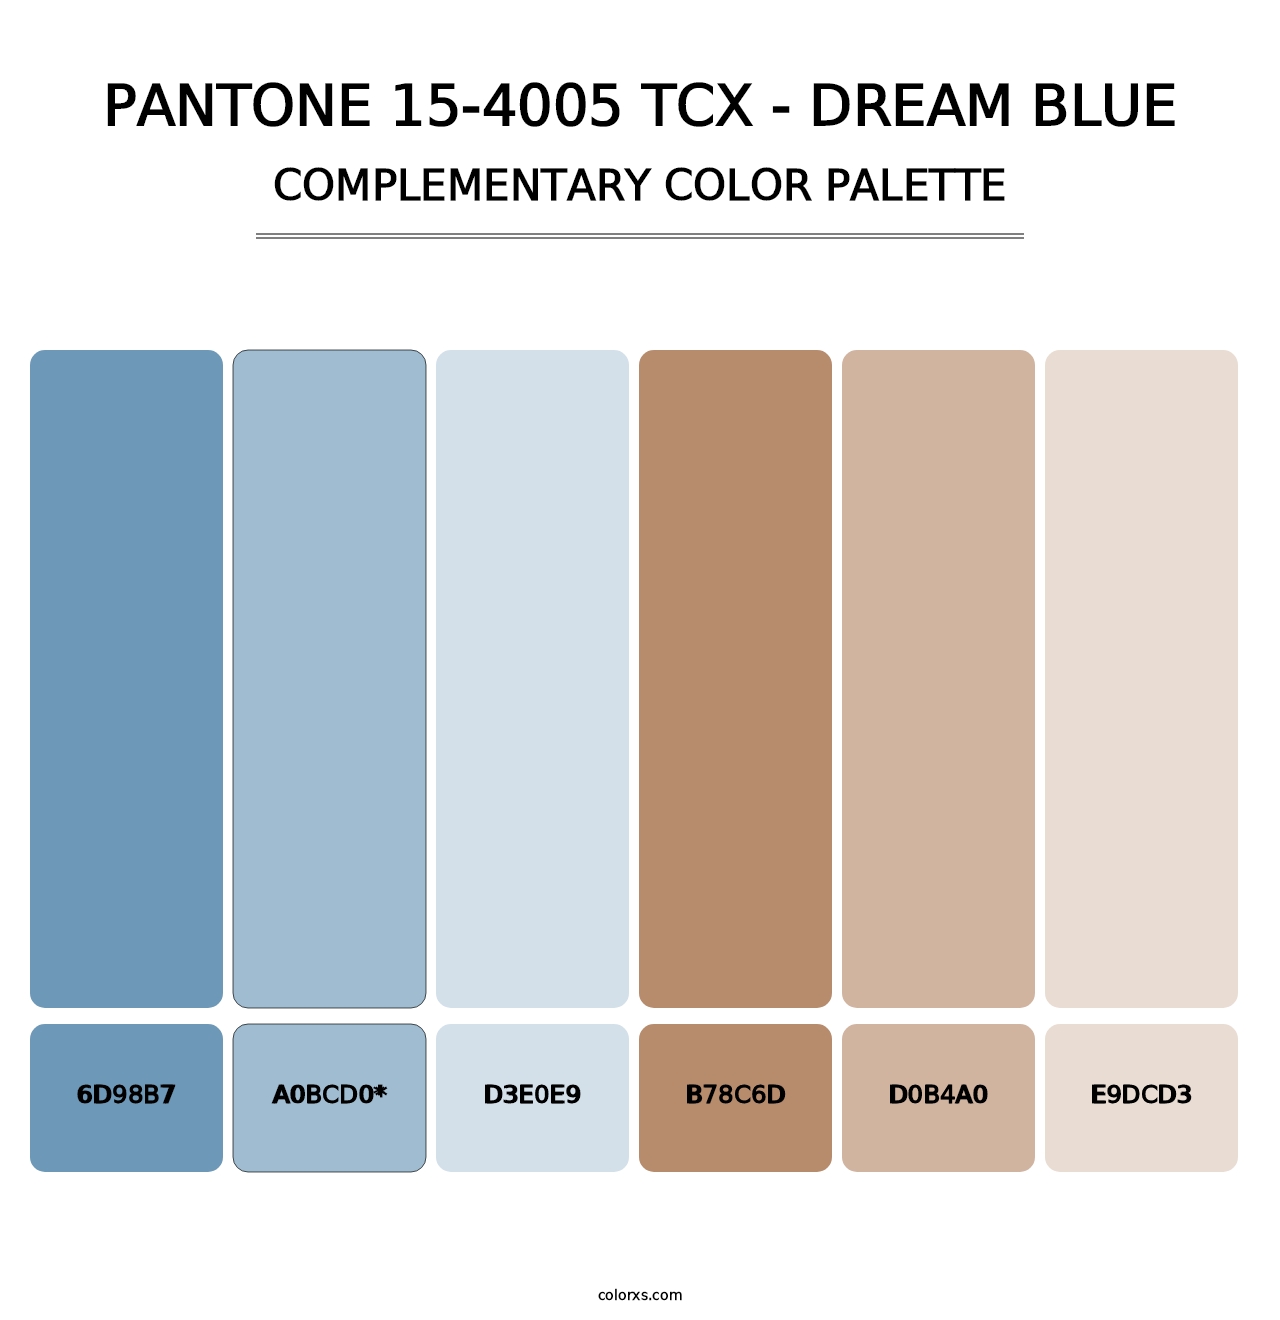 PANTONE 15-4005 TCX - Dream Blue - Complementary Color Palette